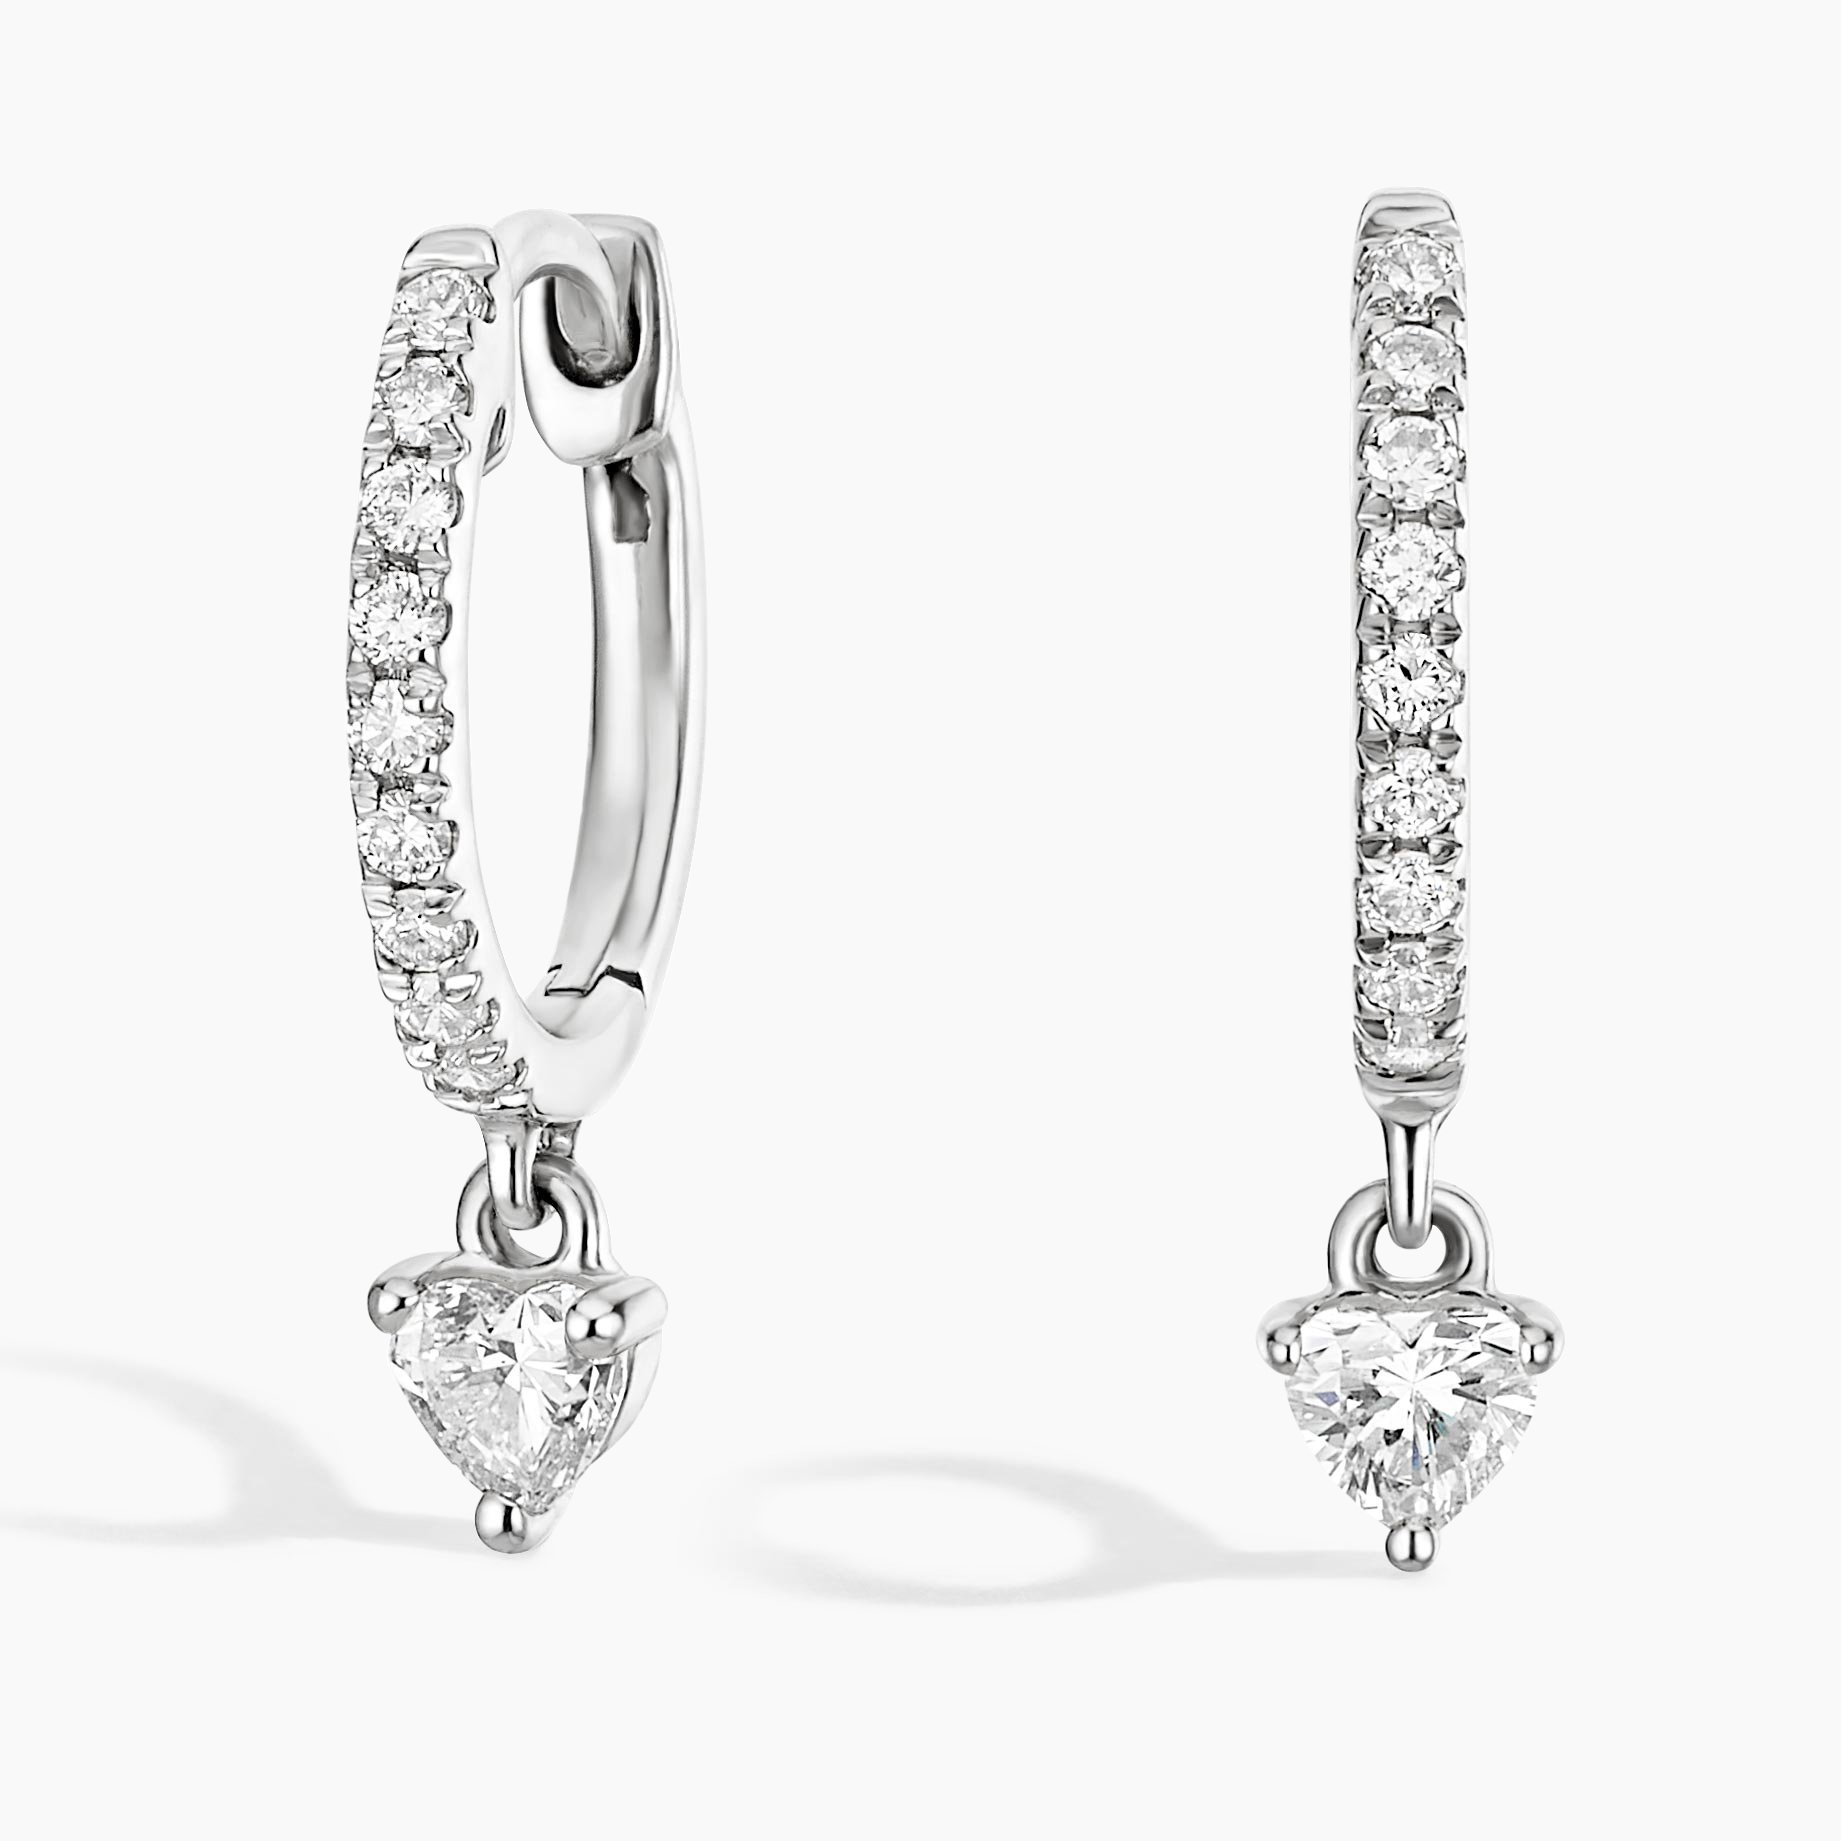 3 Carat Heart Diamond Earrings Heart Style Dangle Earring White Gold